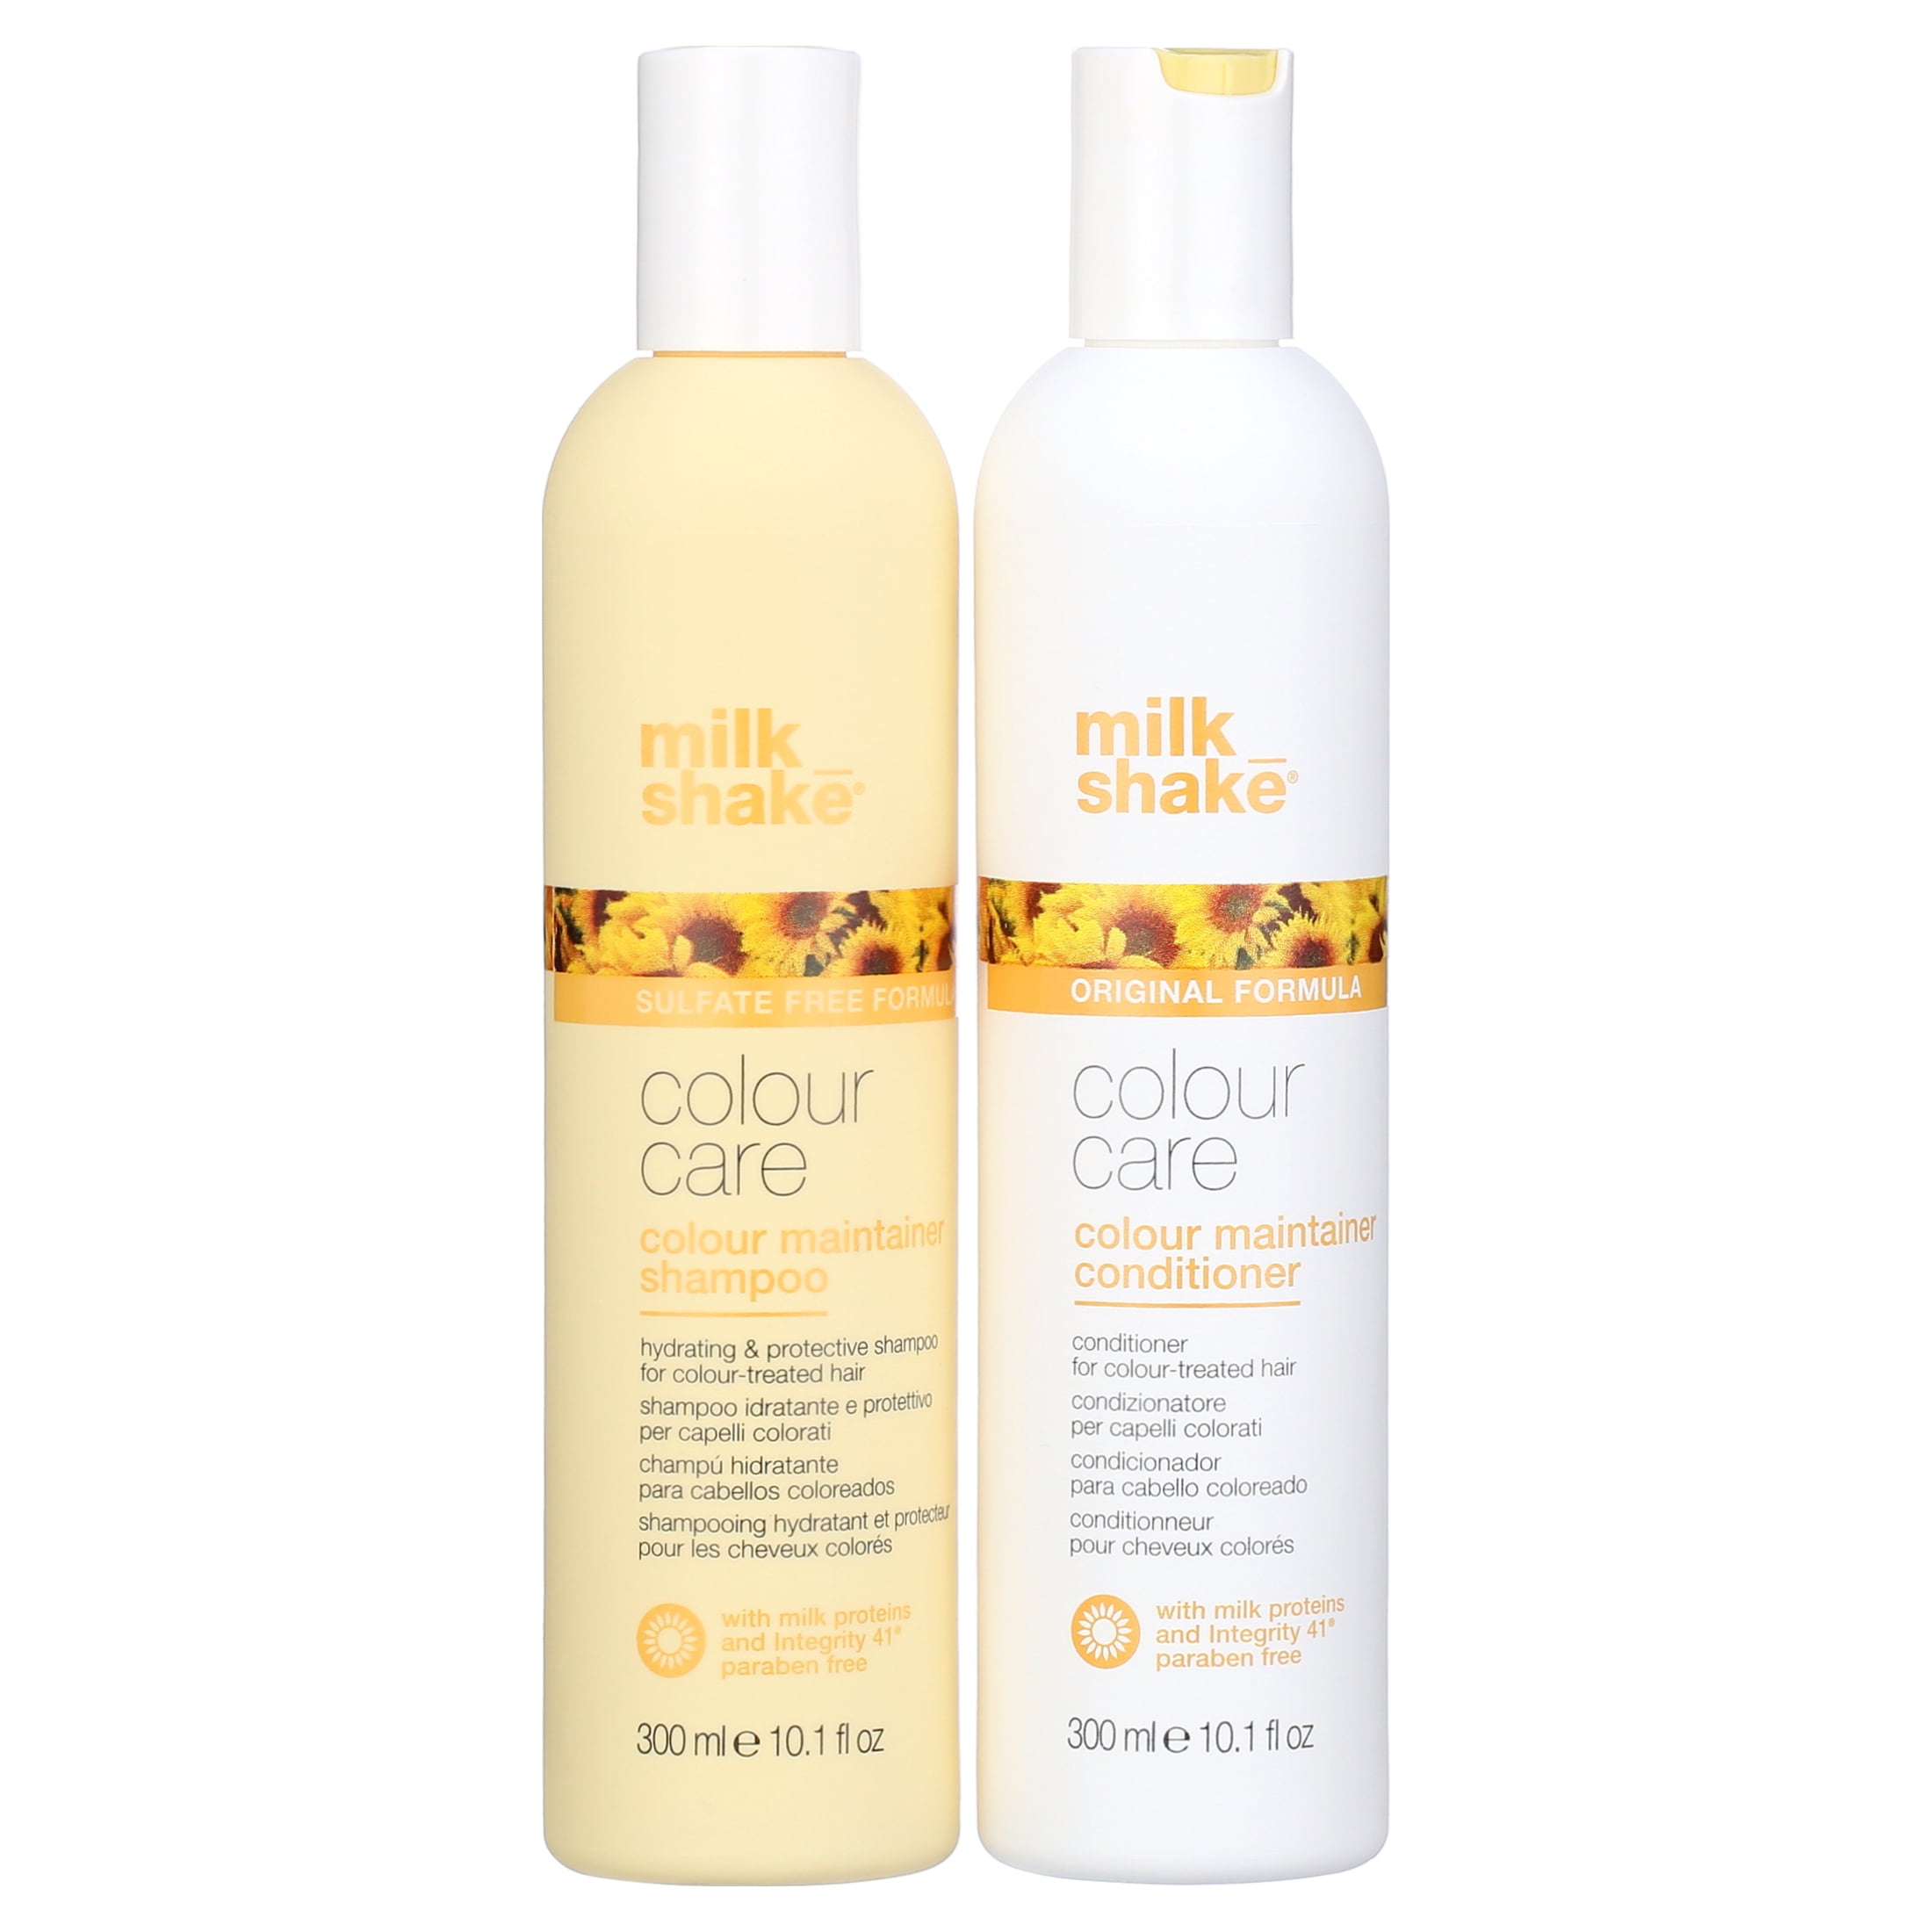 Retrò Style - Linea Milk Shake idratante è protettiva ideale per capelli  colorati✨ . . . #milkshake #colourcare #hydratation